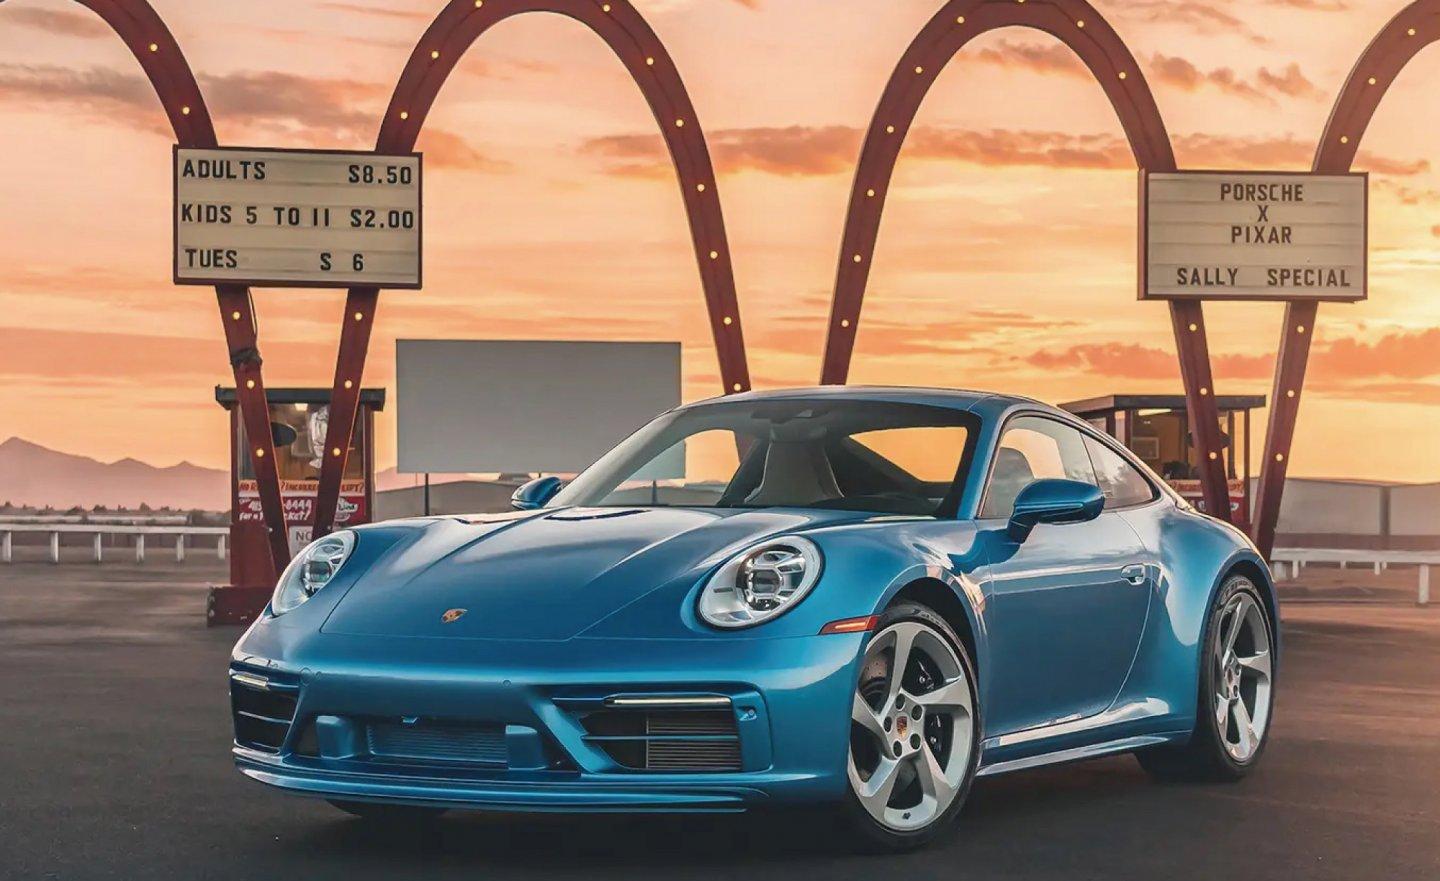 《汽車總動員》莎莉版的保時捷 Porsche 911 Sally Carrera，以 360 萬美元創下拍賣史上最昂貴保時捷的記錄